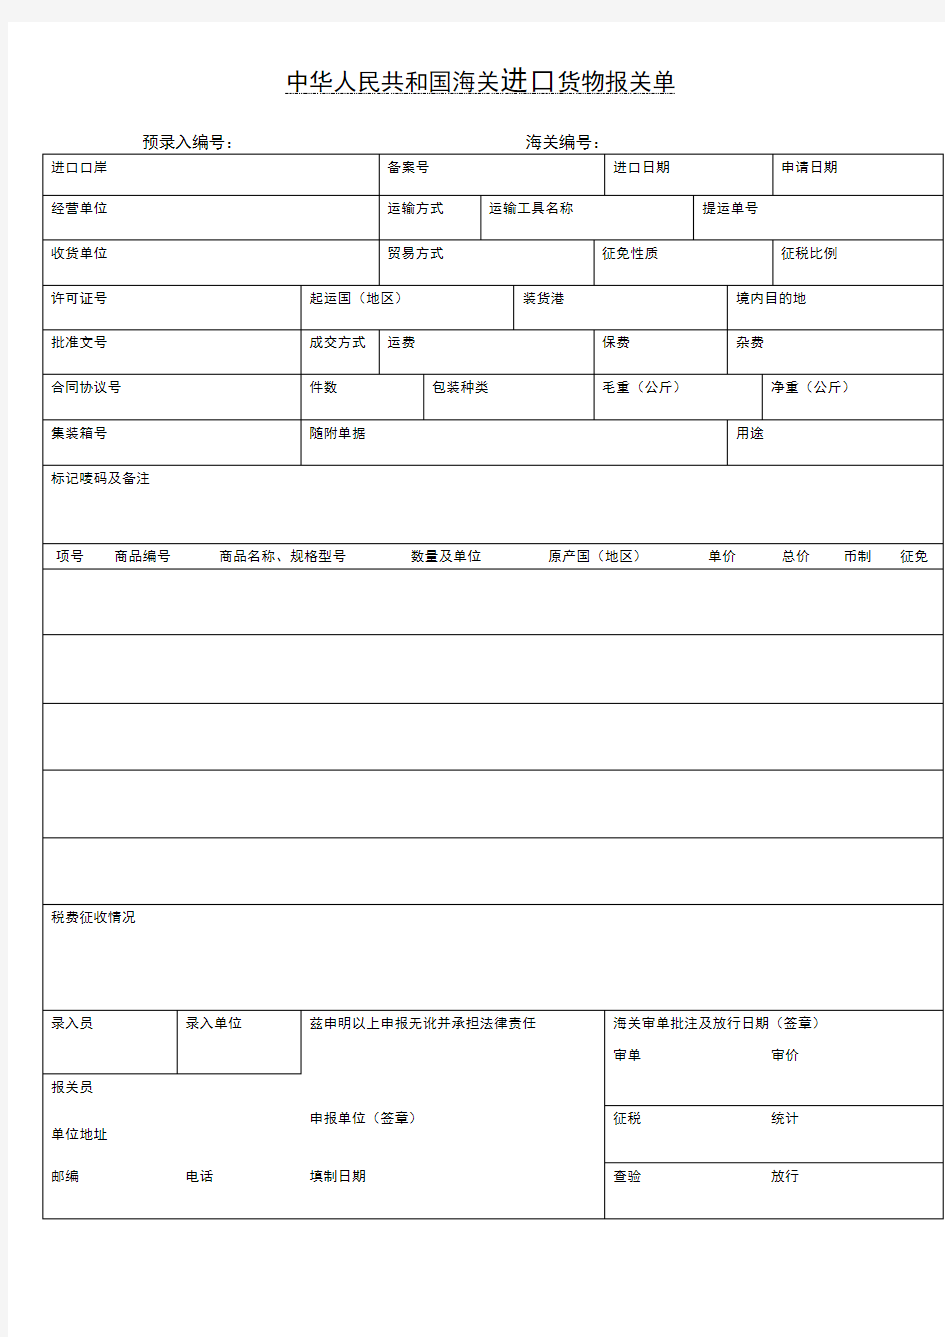 中华人民共和国海关出口和进口货物报关单(样本)